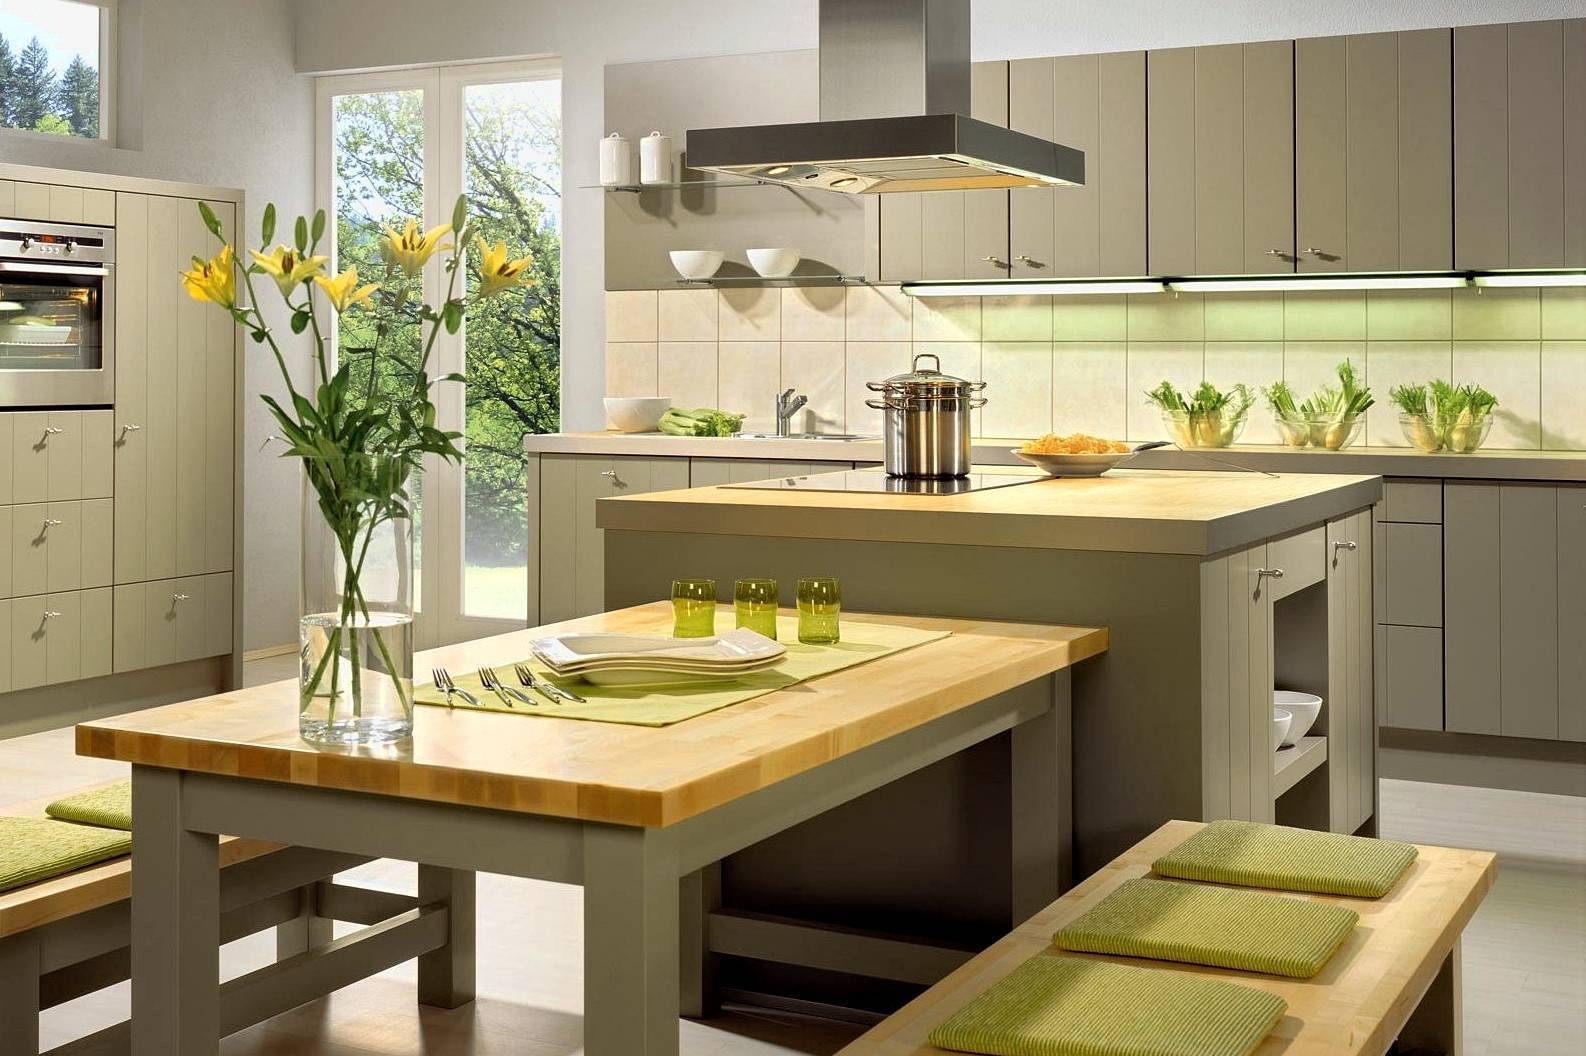 Кухня в эко-стиле, как создать интерьер без ошибок, выбираем палитру, материалы, мебель и декор - 22 фото